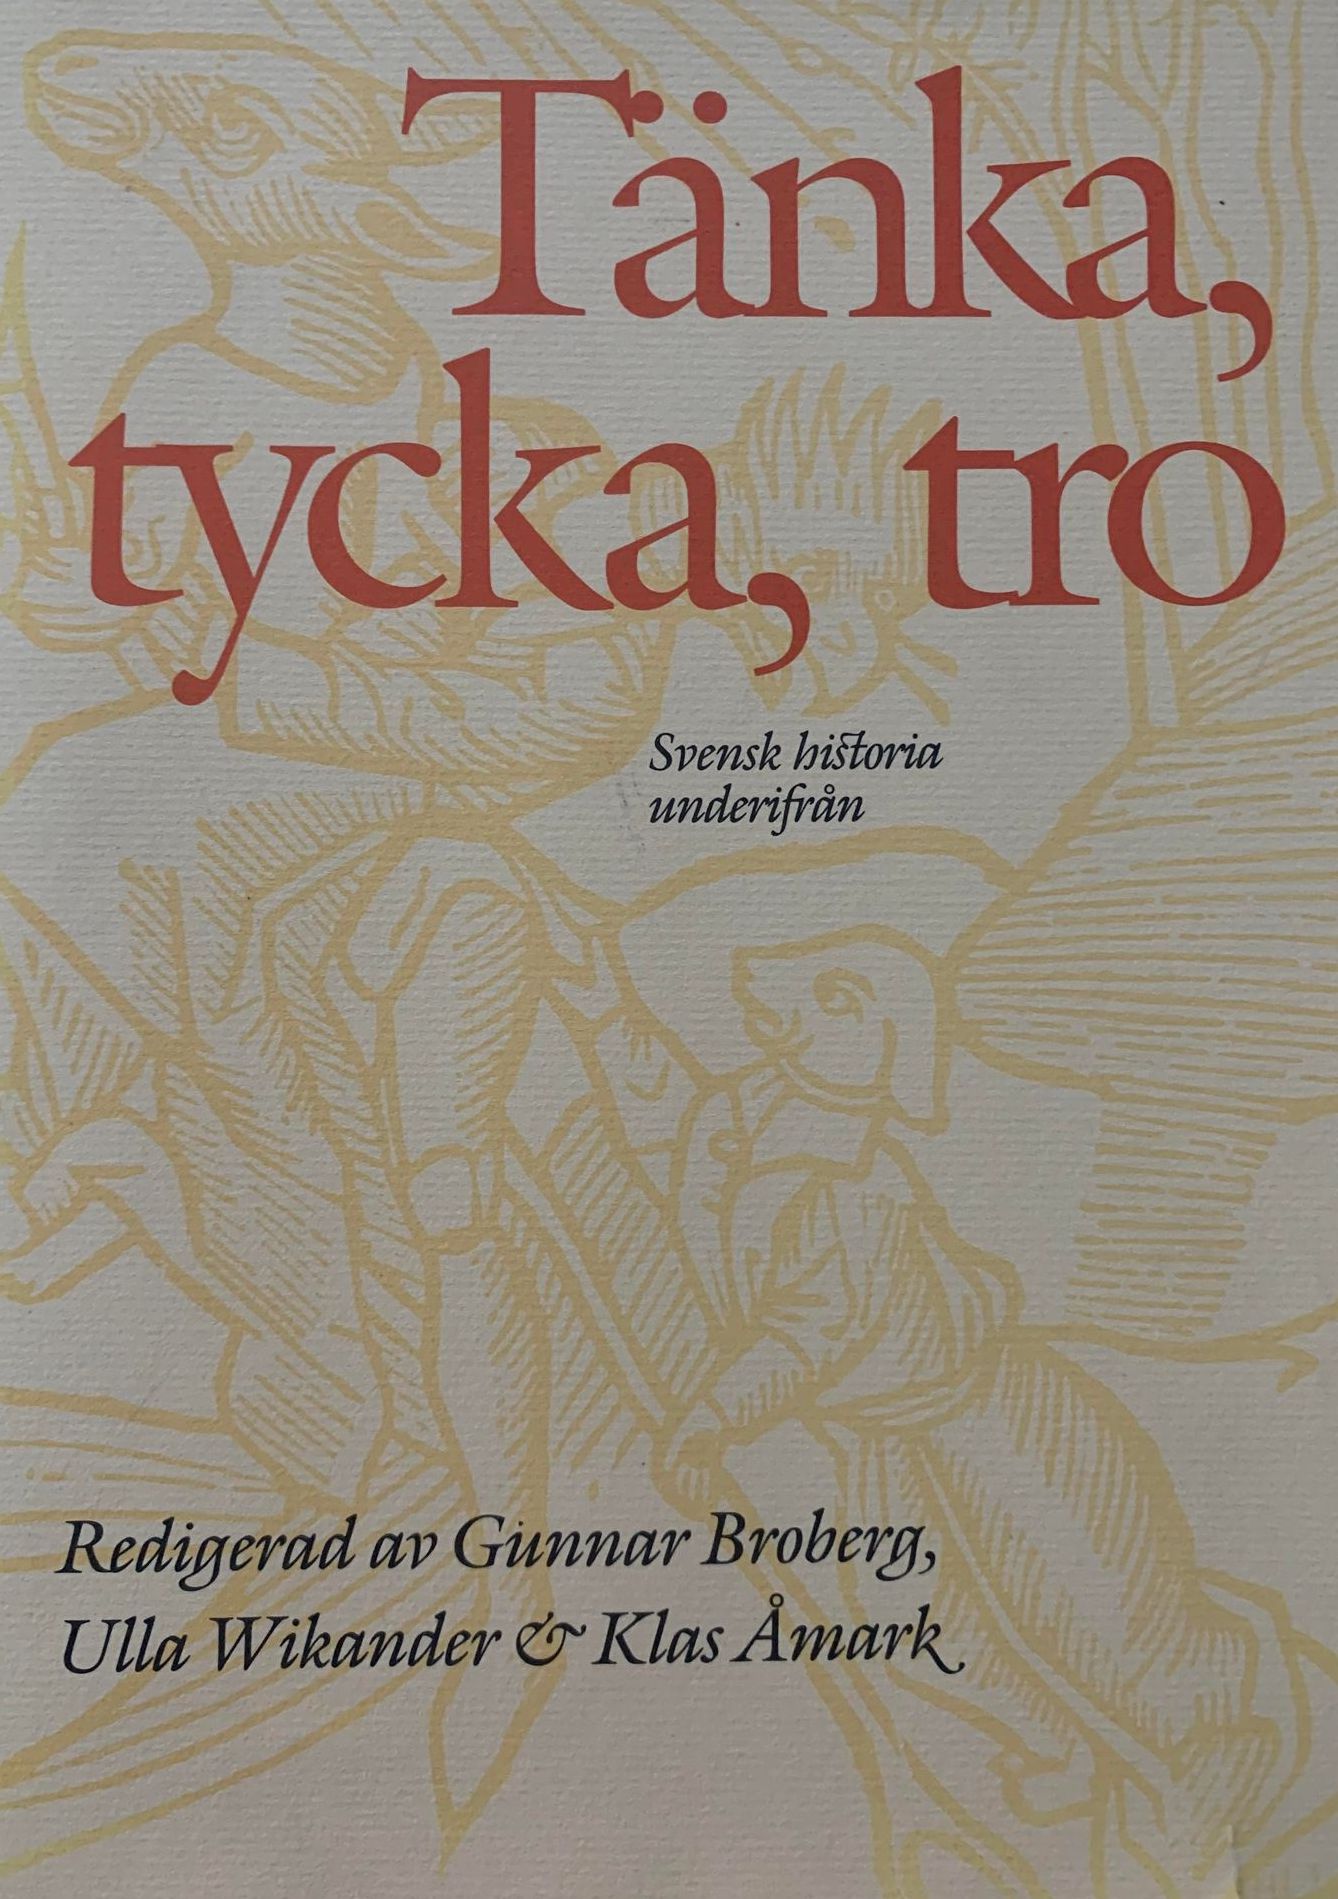 Tänka, tycka, tro : svensk historia underifrån; Gunnar Broberg, Ulla Wikander, Klas Åmark; 1993